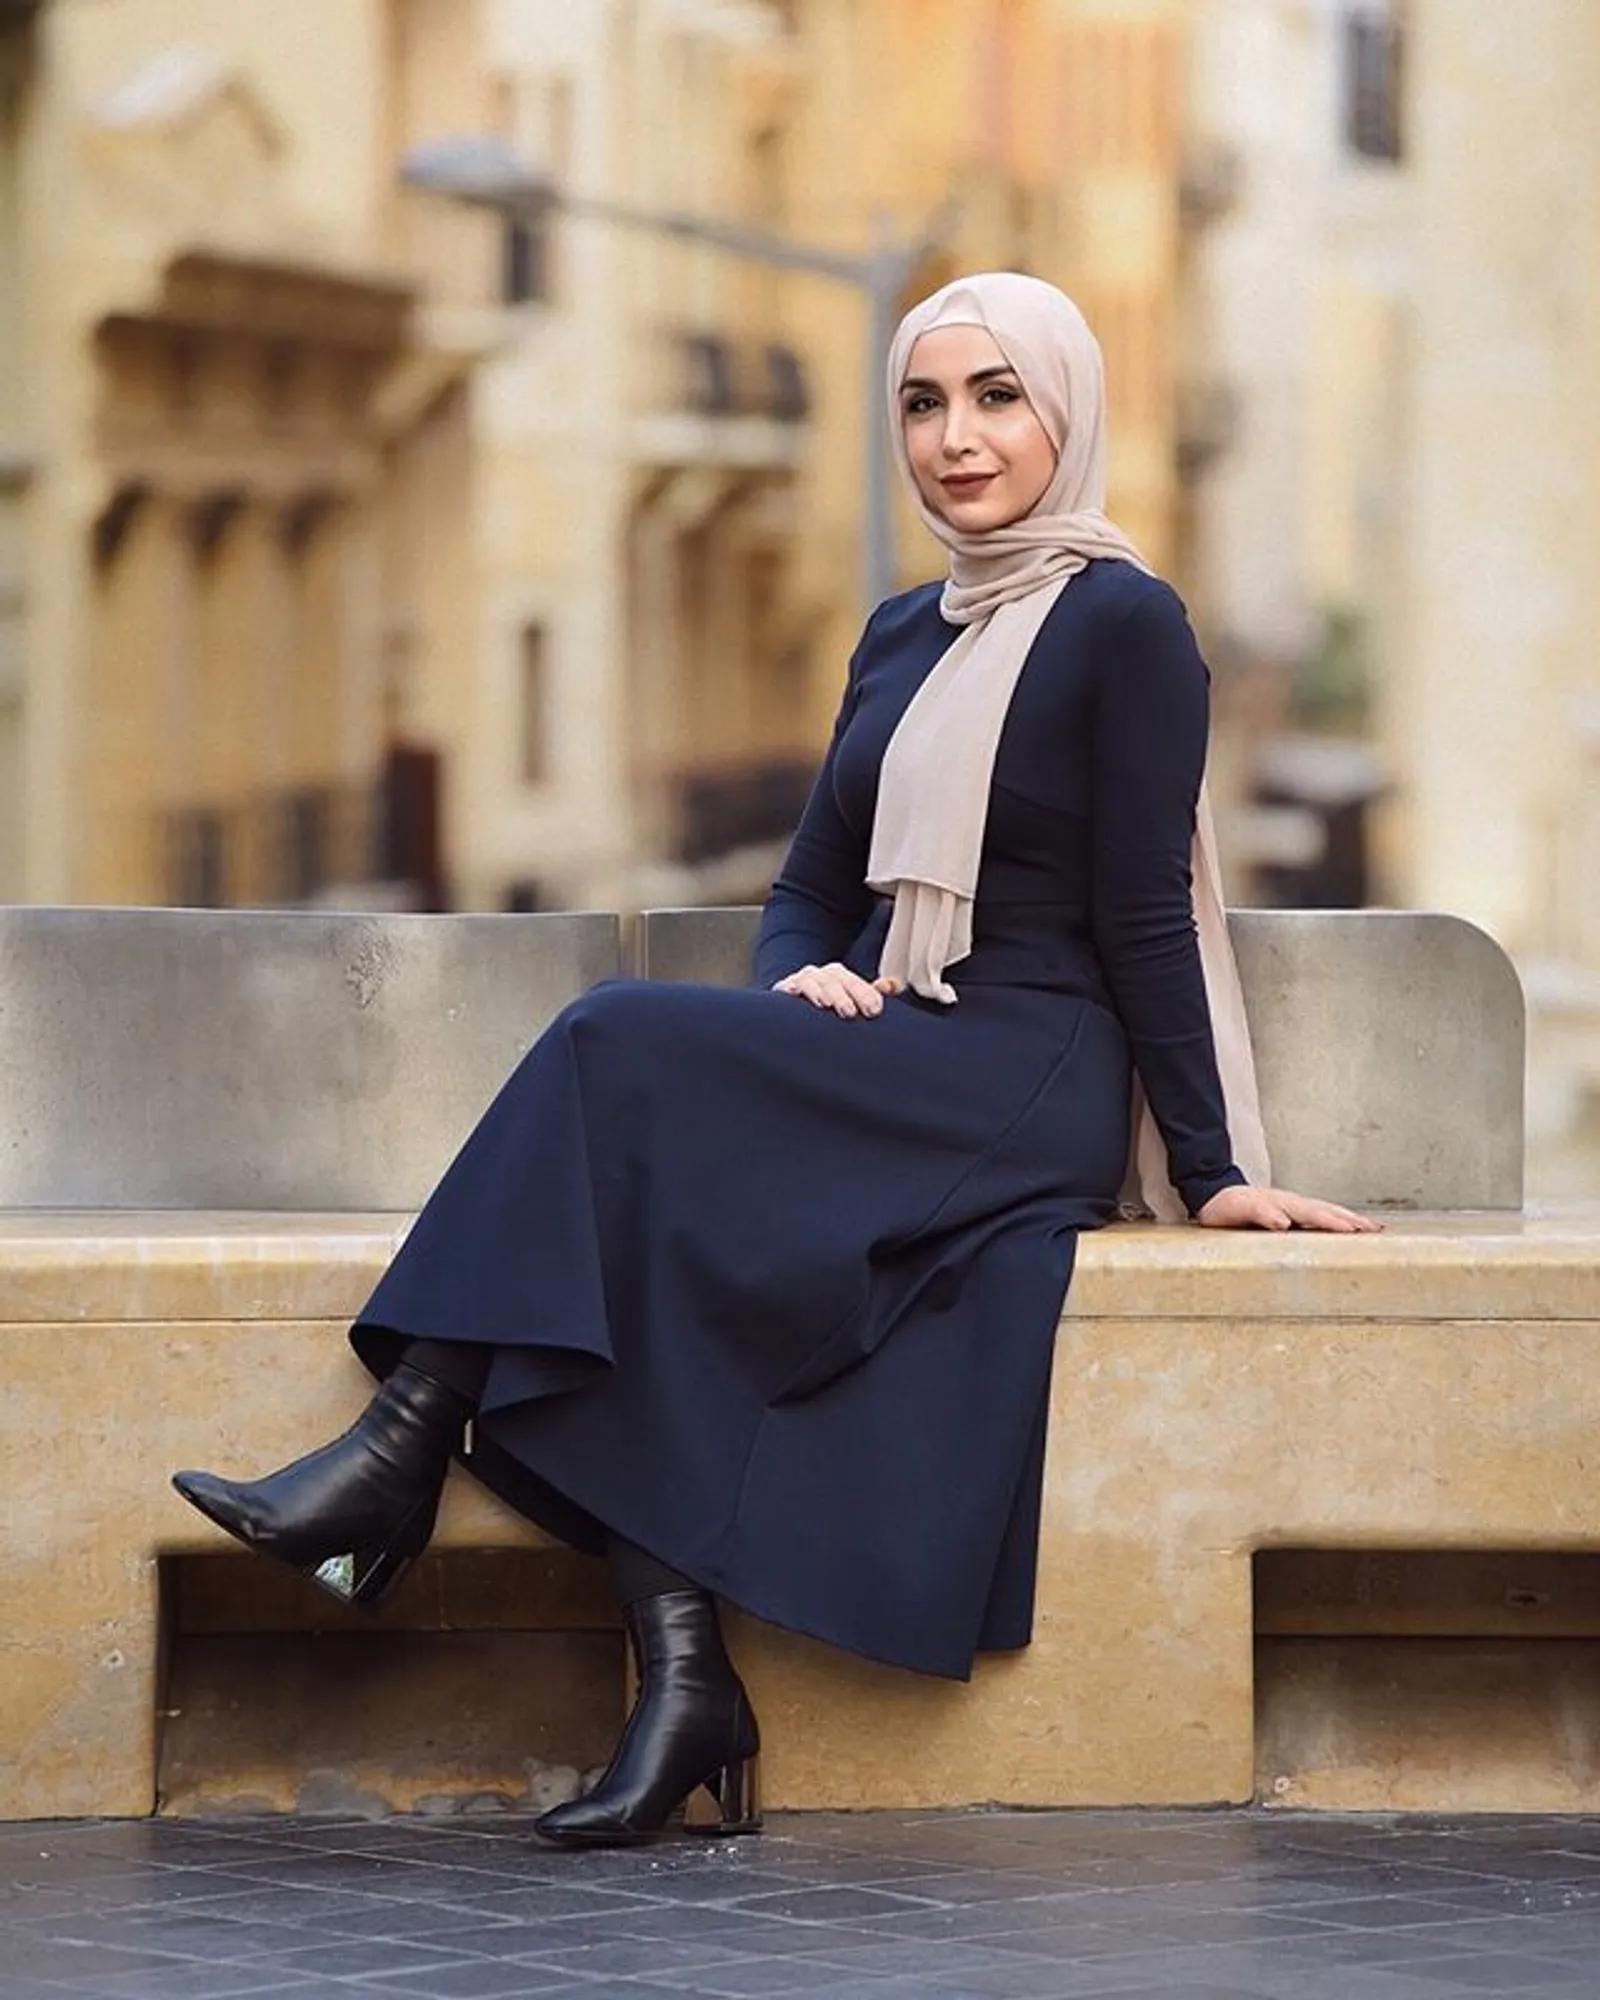 Rekomendasi Warna Hijab yang Cocok untuk Baju Hitam